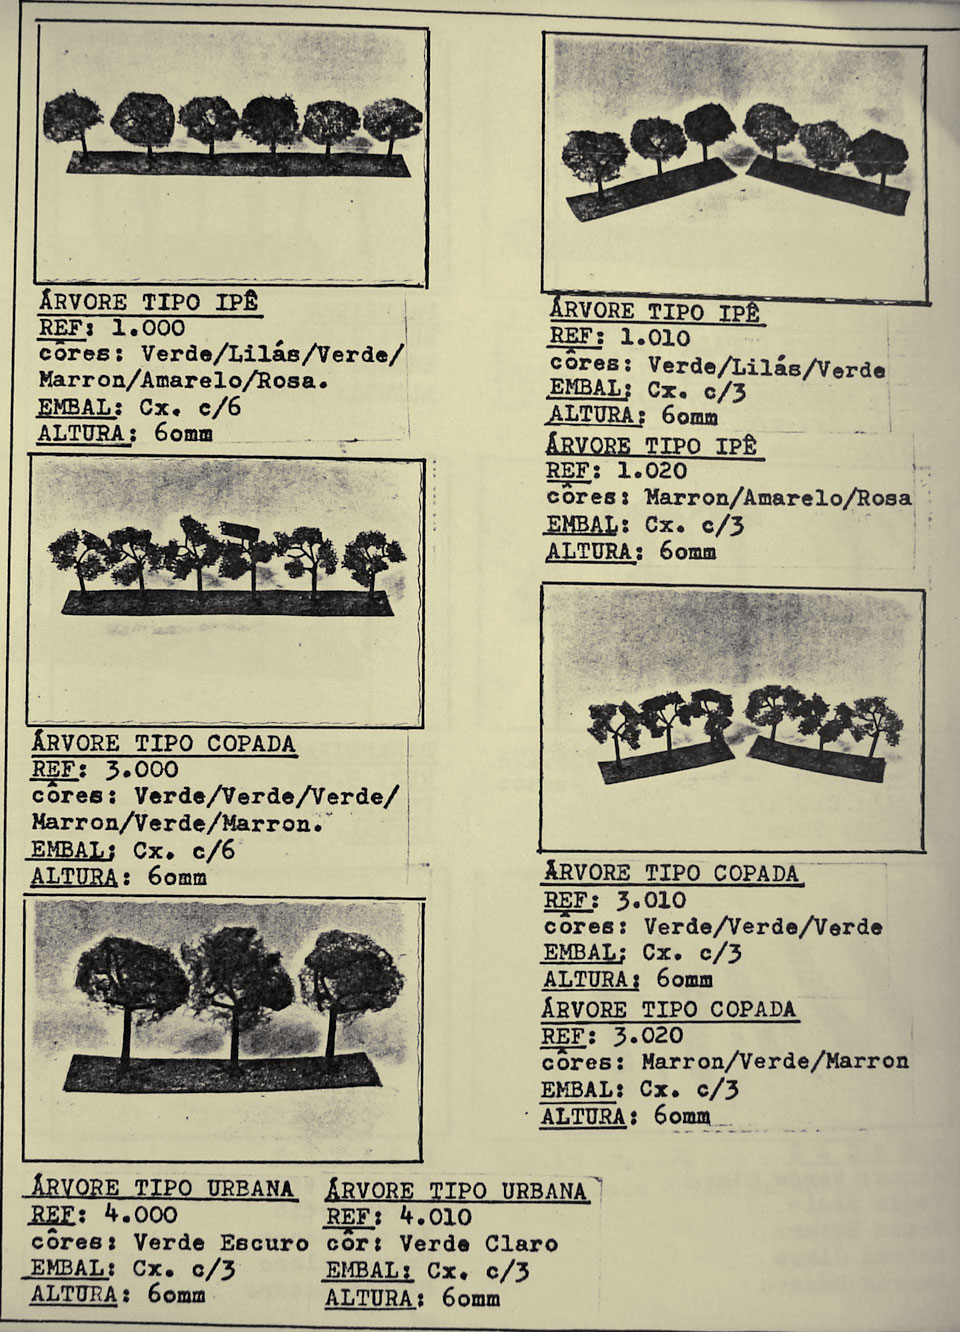 Página 9, com o mostruário de pequenas árvores e arbustos decorativos para maquetes de ferreomodelismo